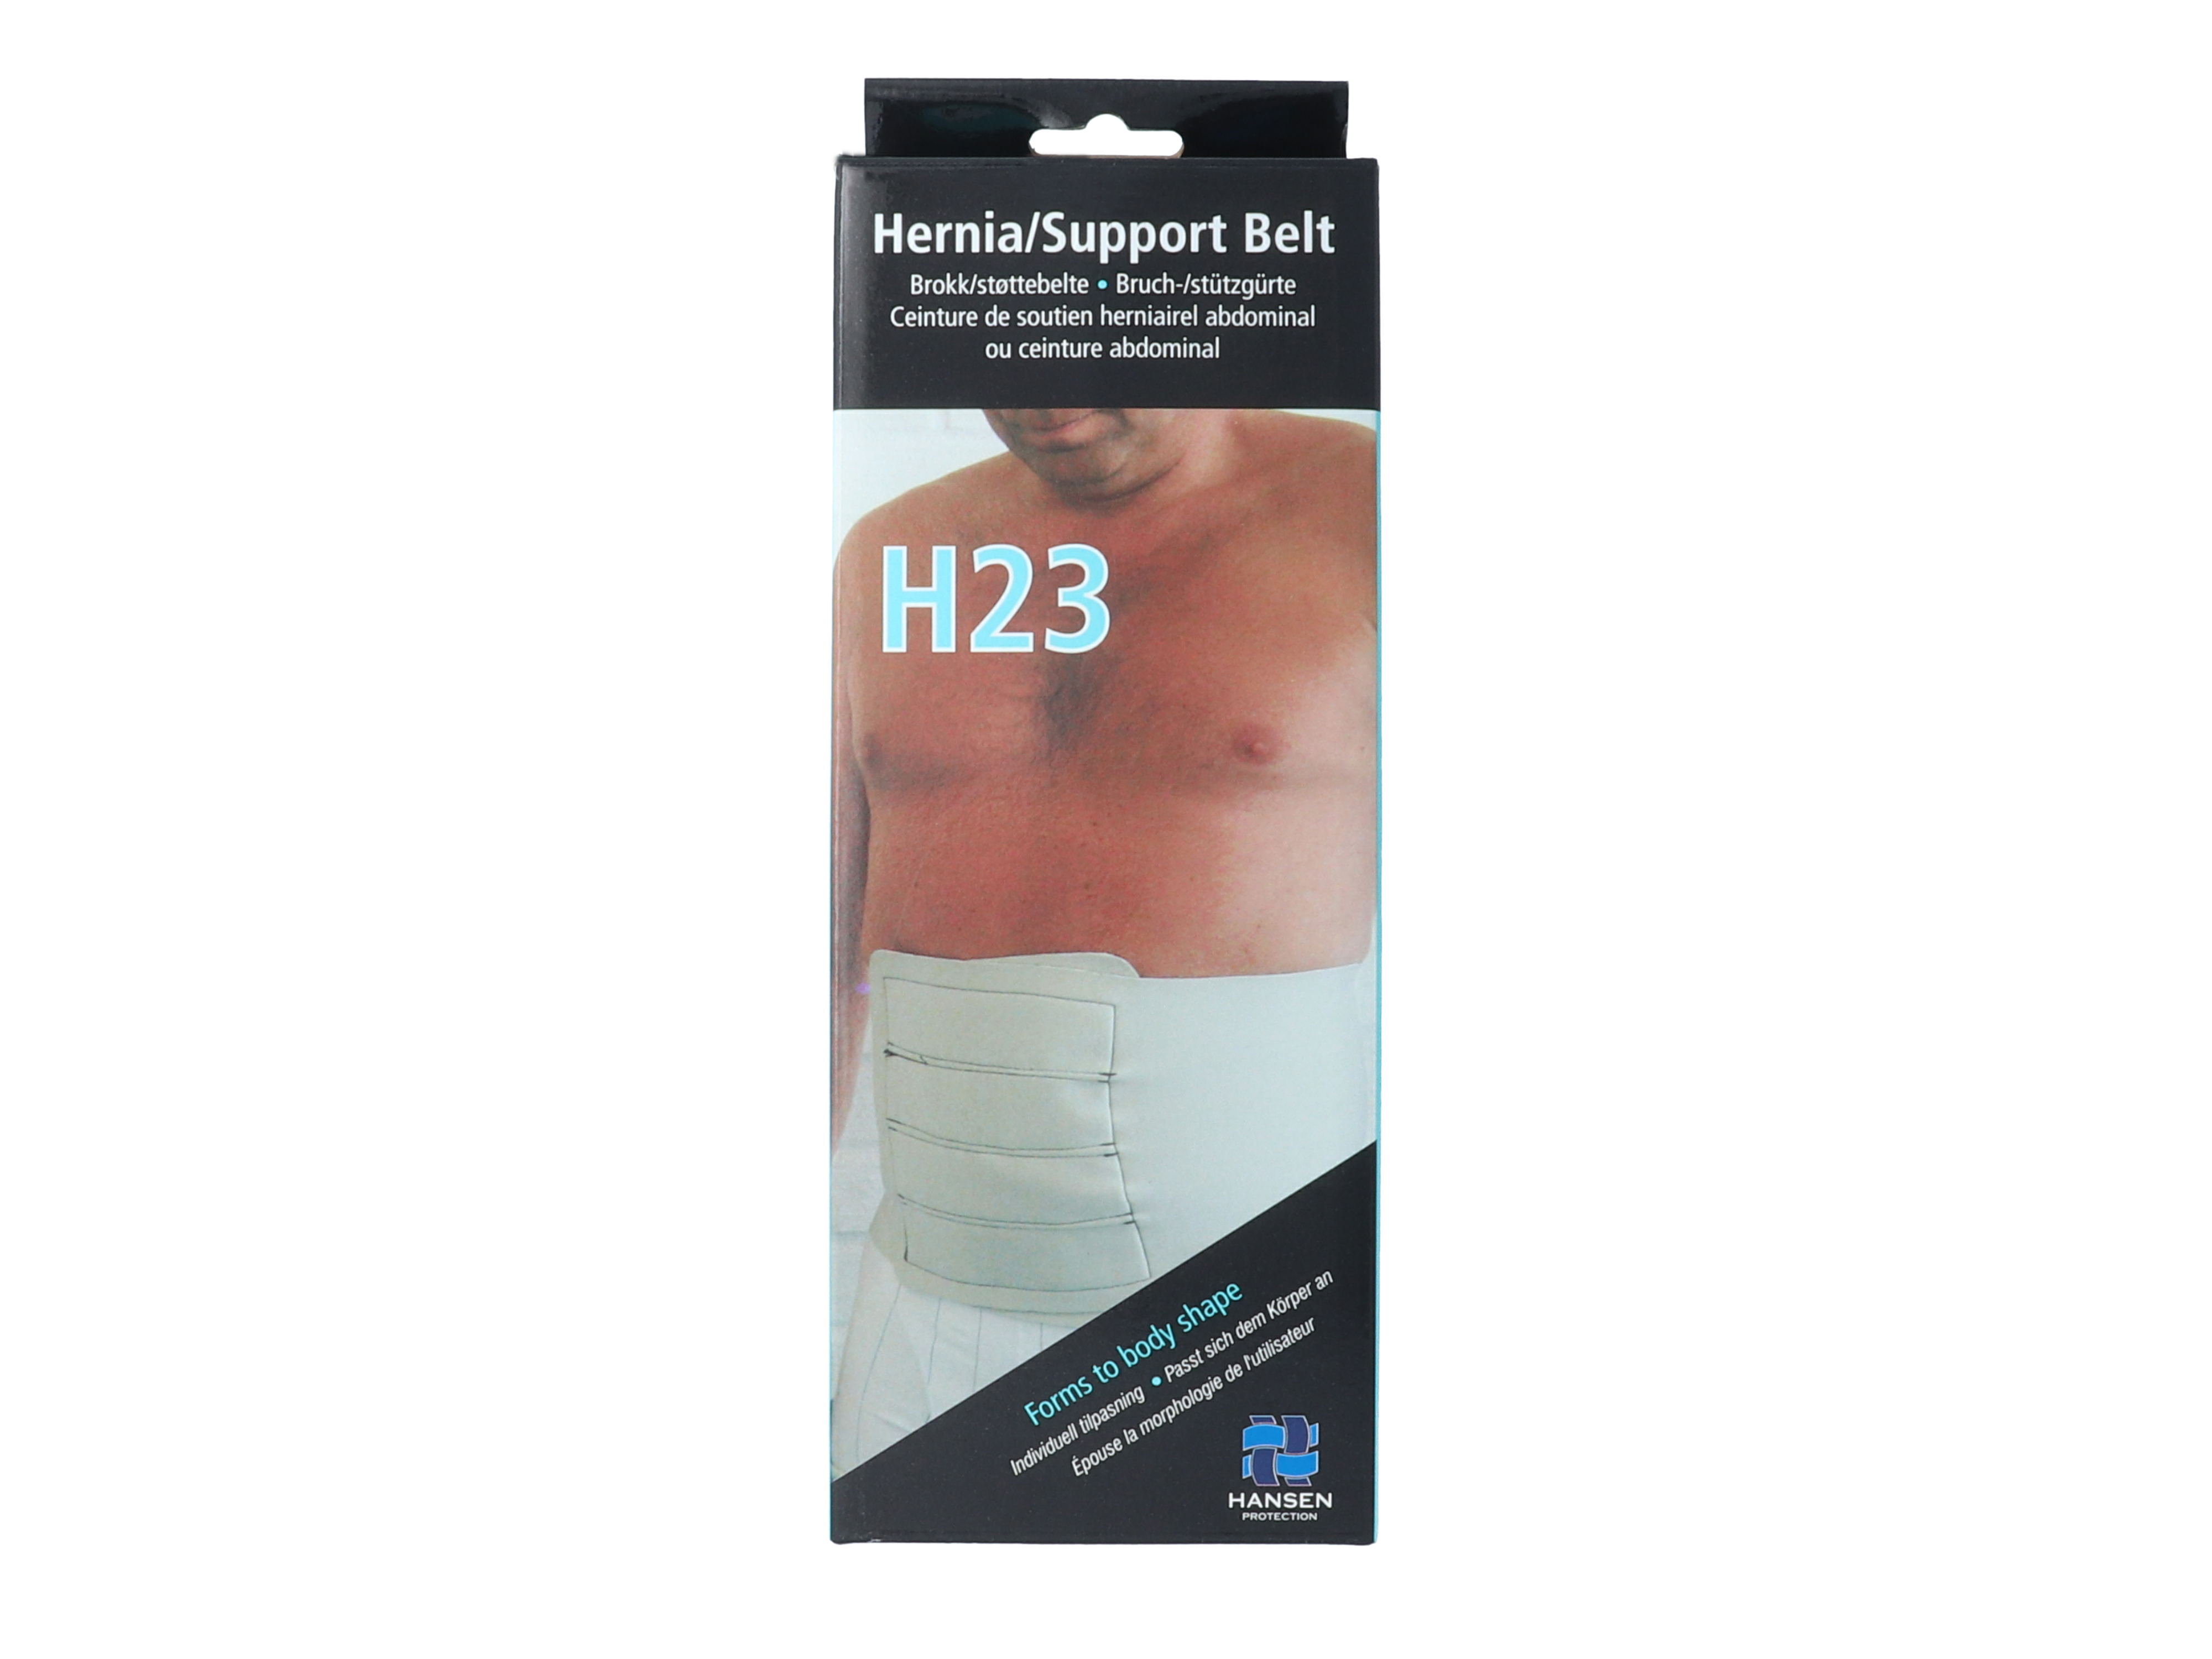 Hansen Protection HH Brokk/støttebelte H23, str L, omkrets 100 cm, 1 stk.